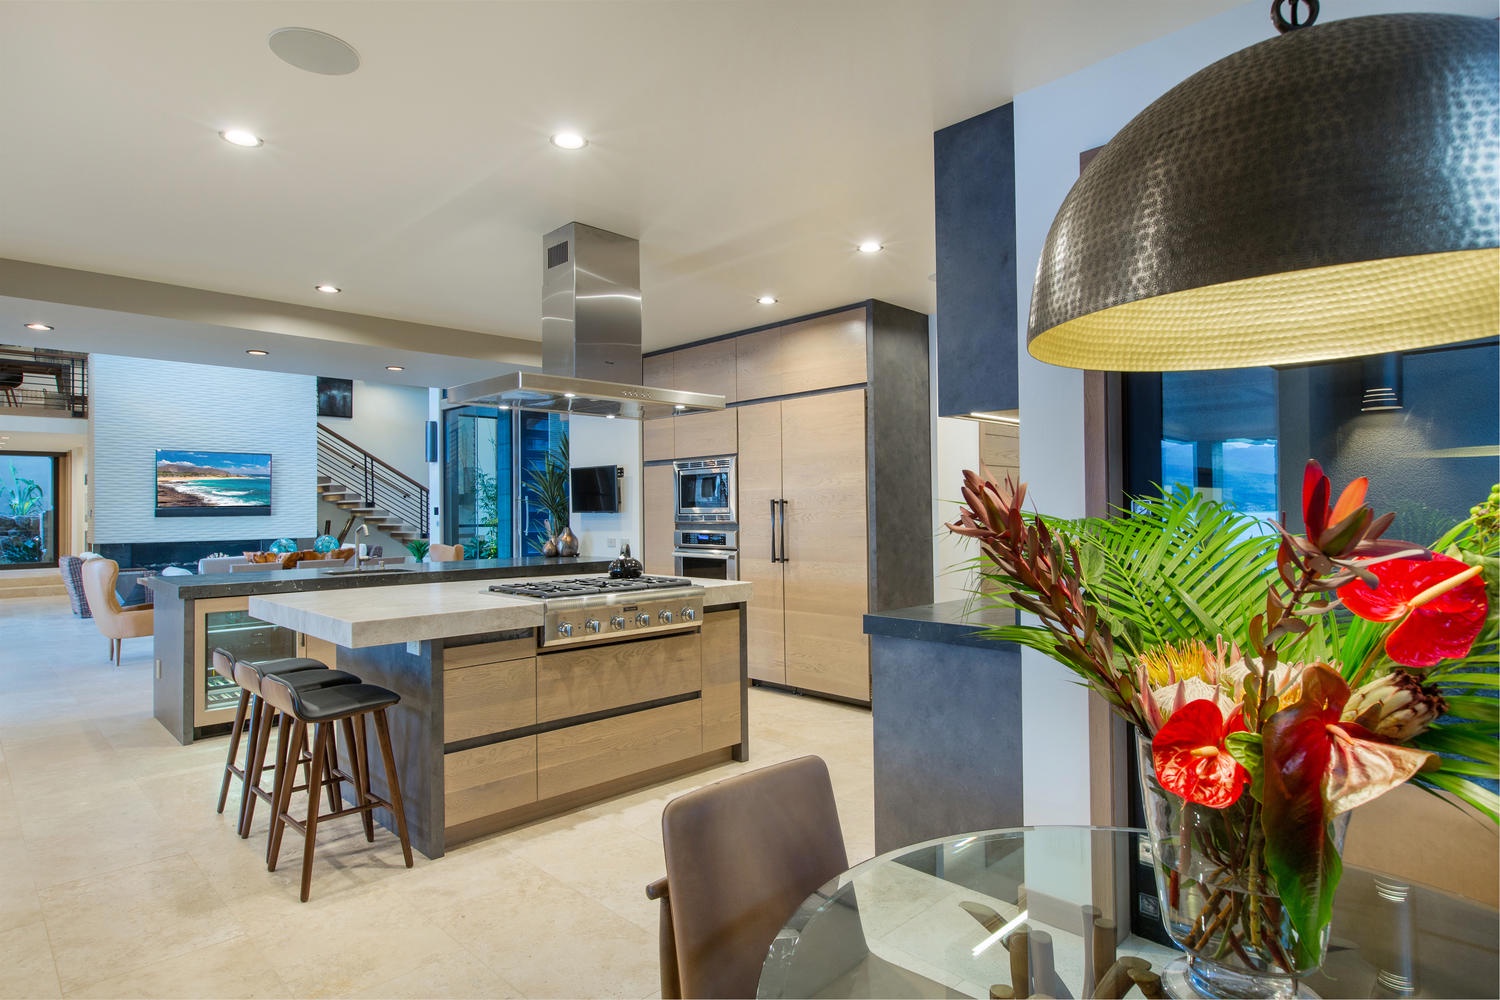 Honolulu Vacation Rentals, Ocean House 4 Bedroom - Kitchen nook